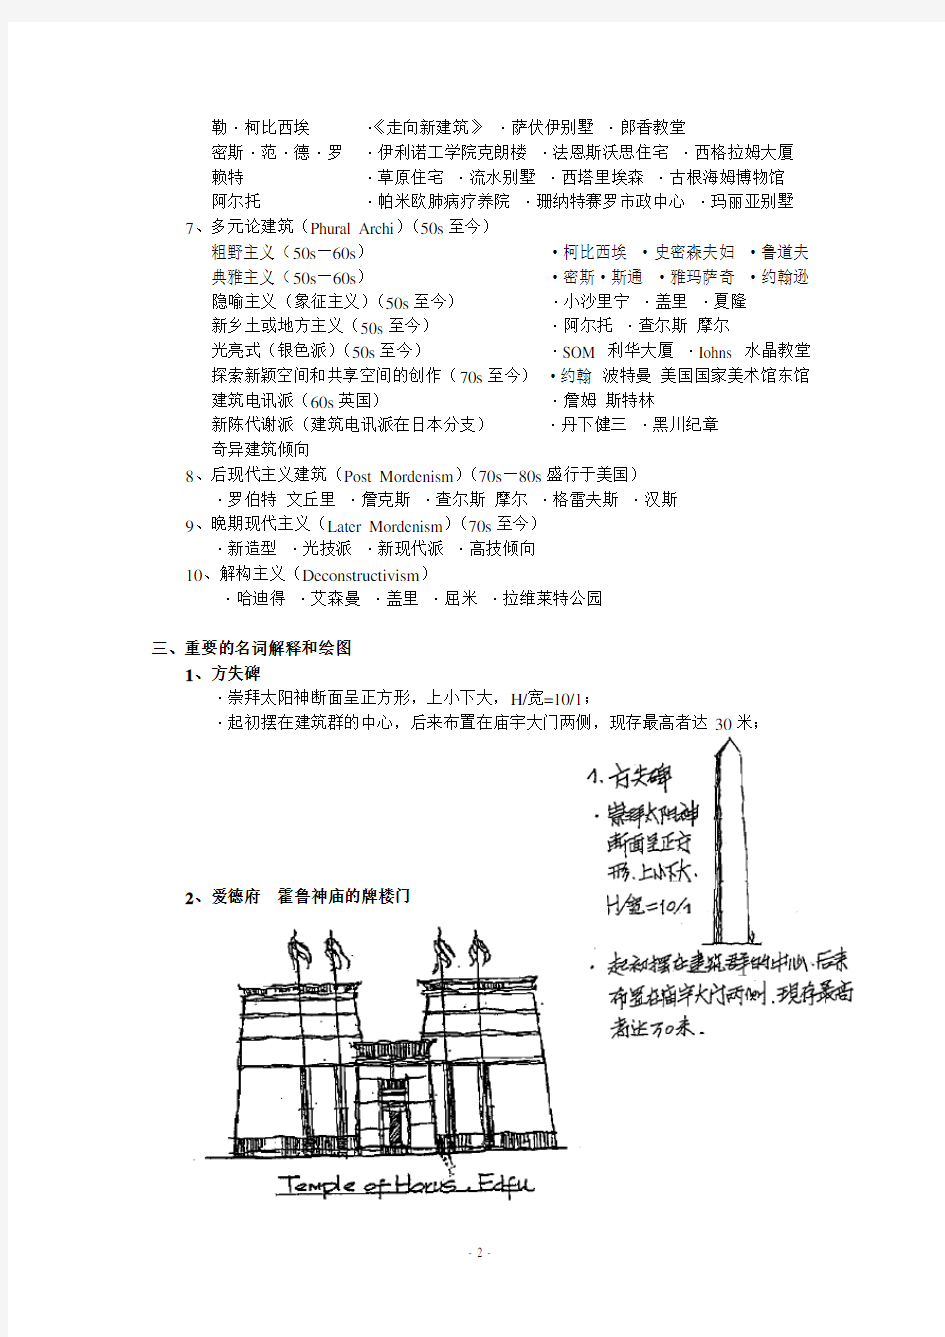 外国建筑史(东南大学)建筑 考研 笔记 【自己一个字一个字整理的】